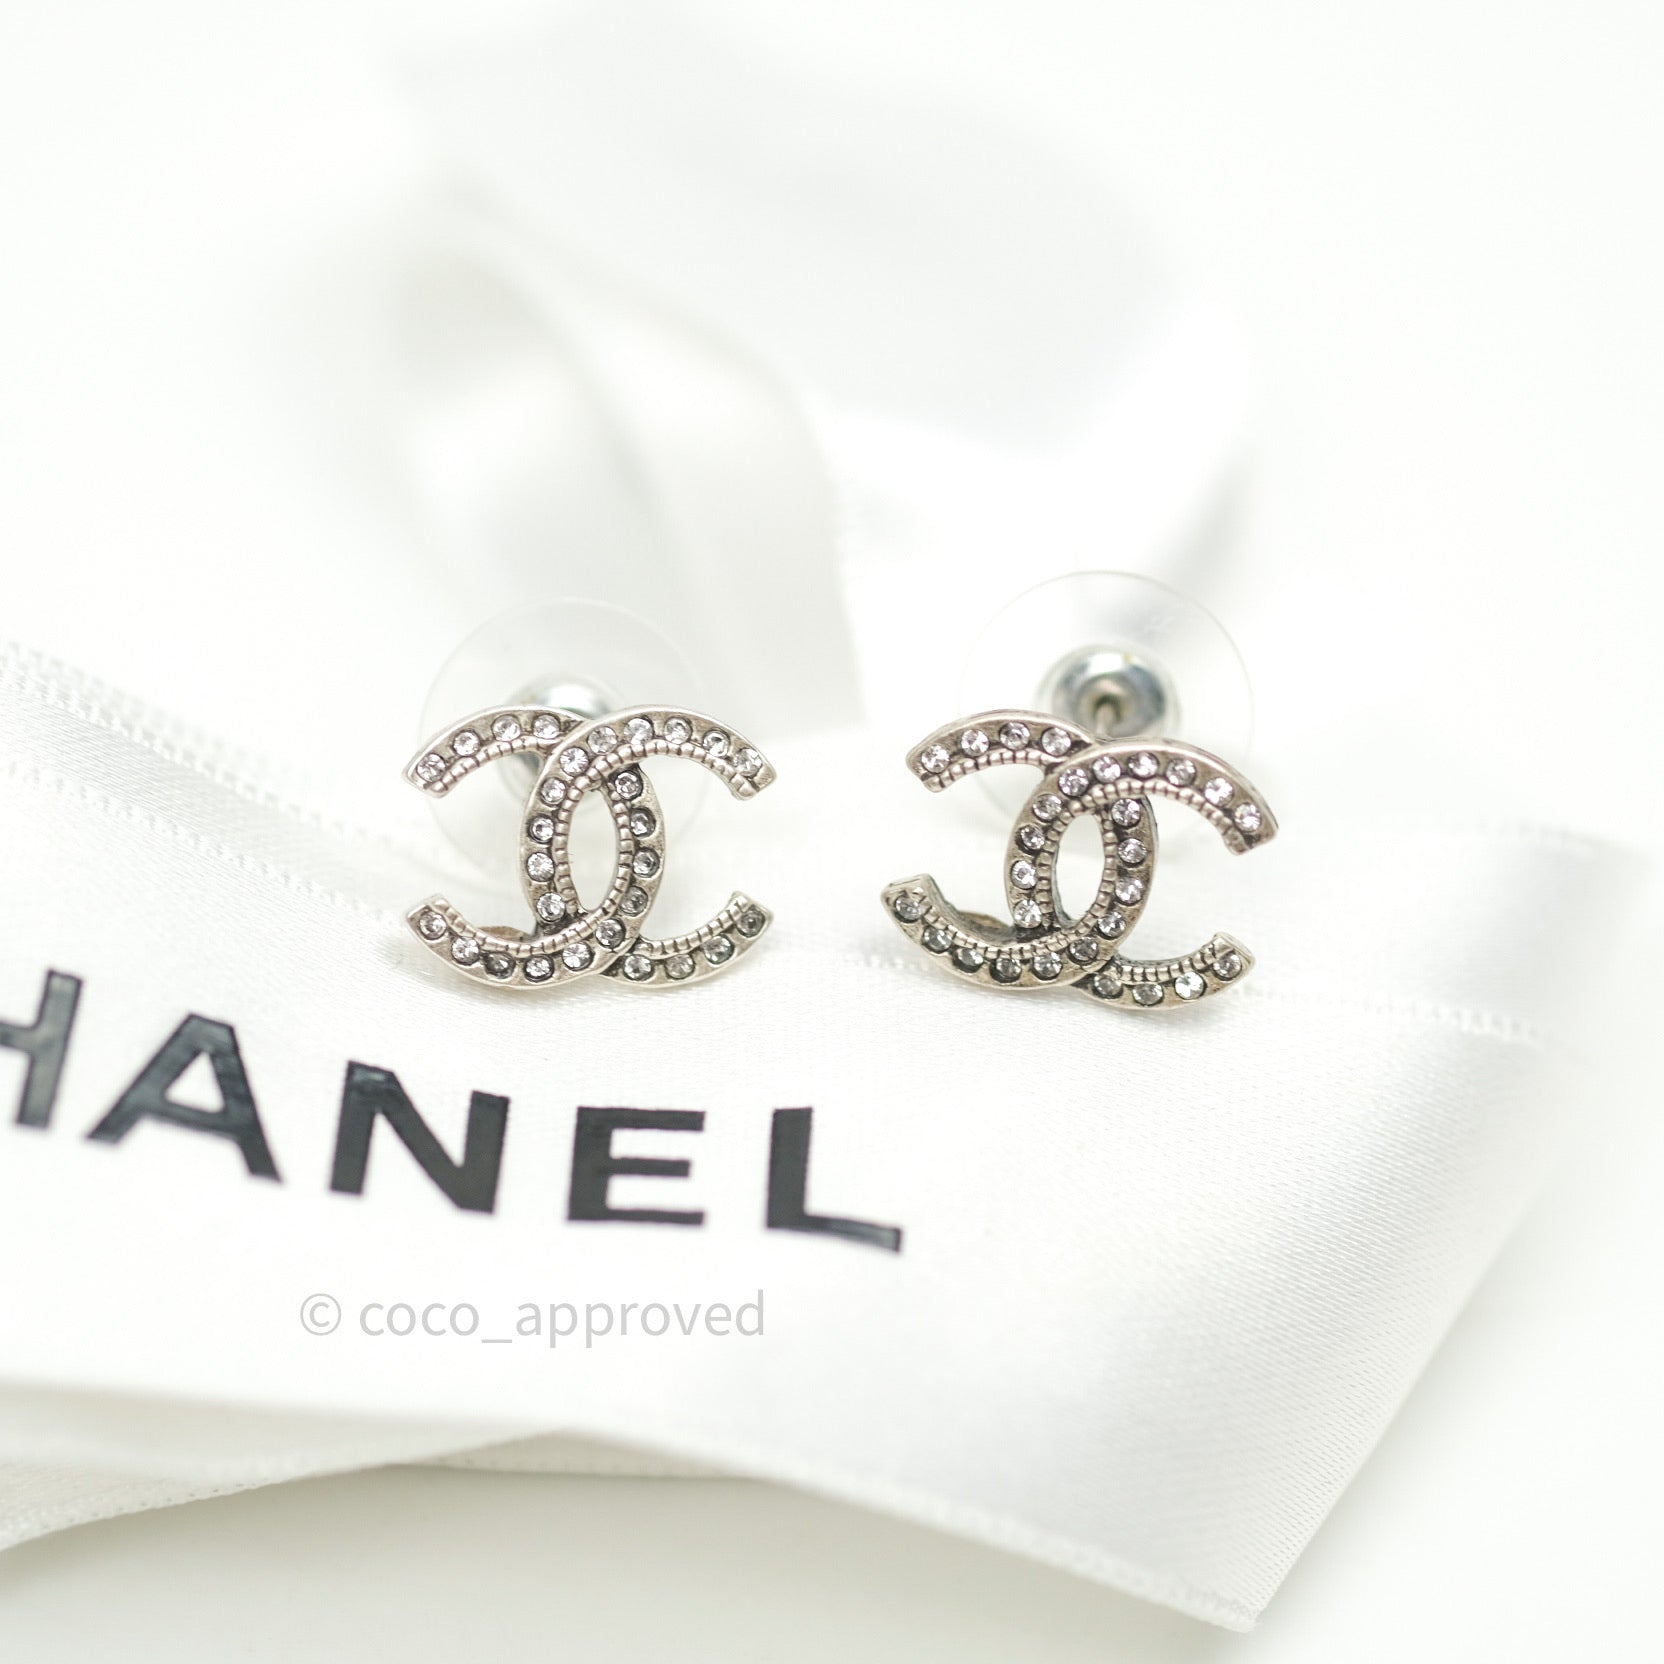 chanel earrings for women cc logo